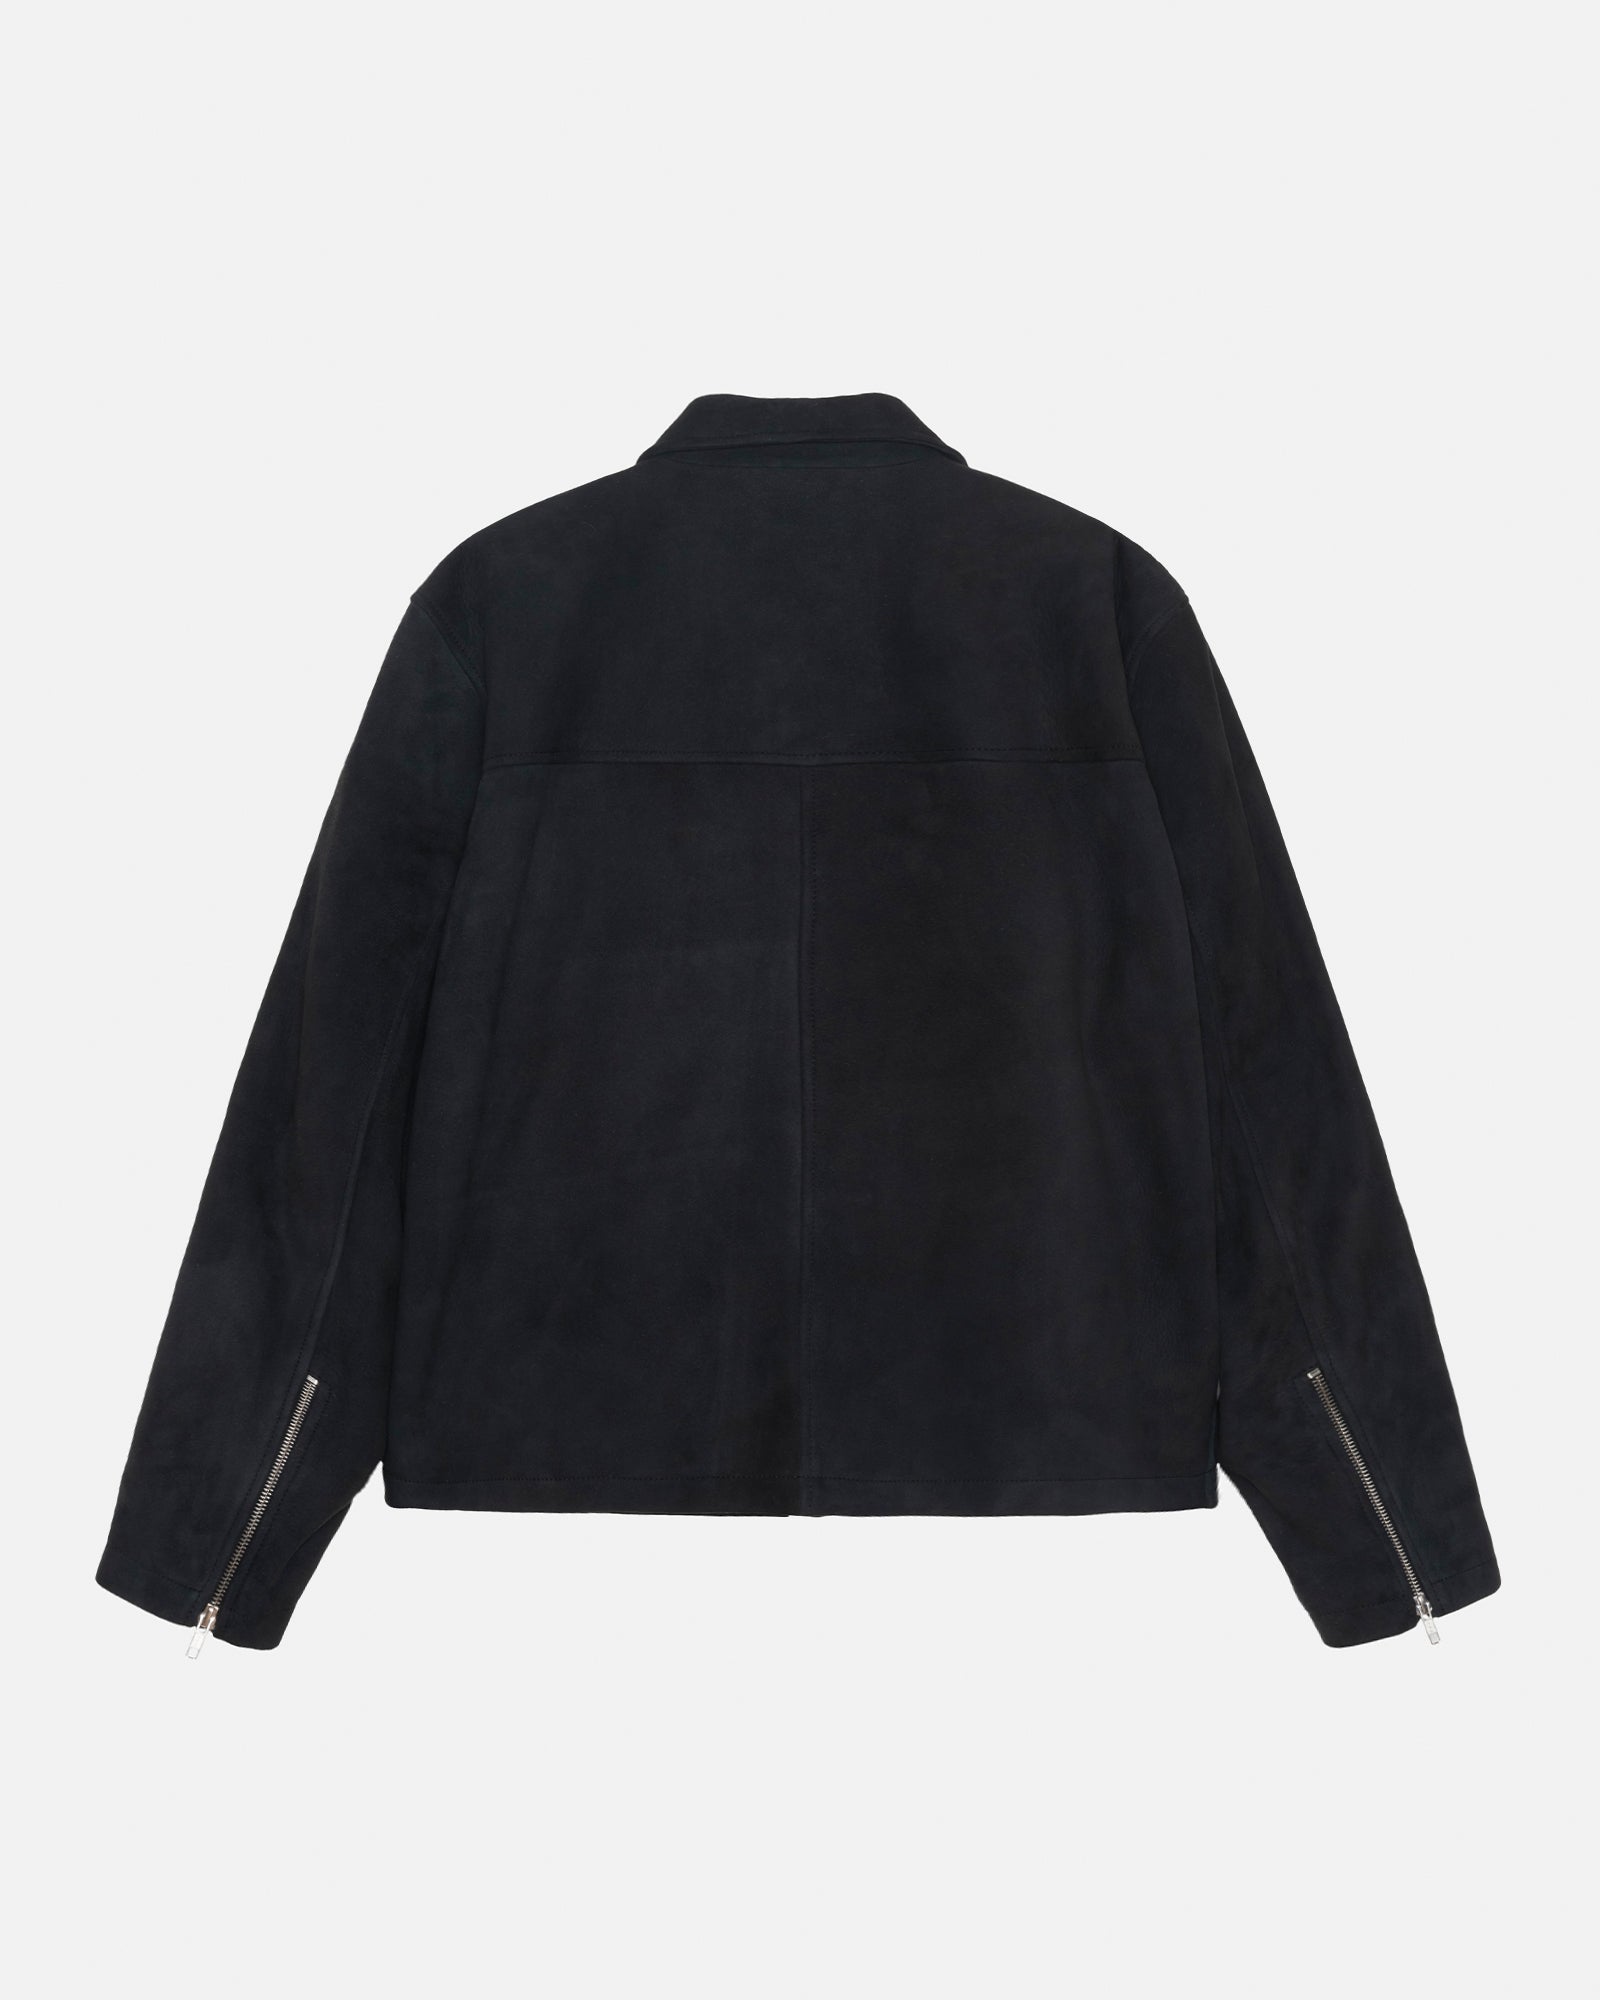 Stüssy Bing Jacket Suede Black Outerwear